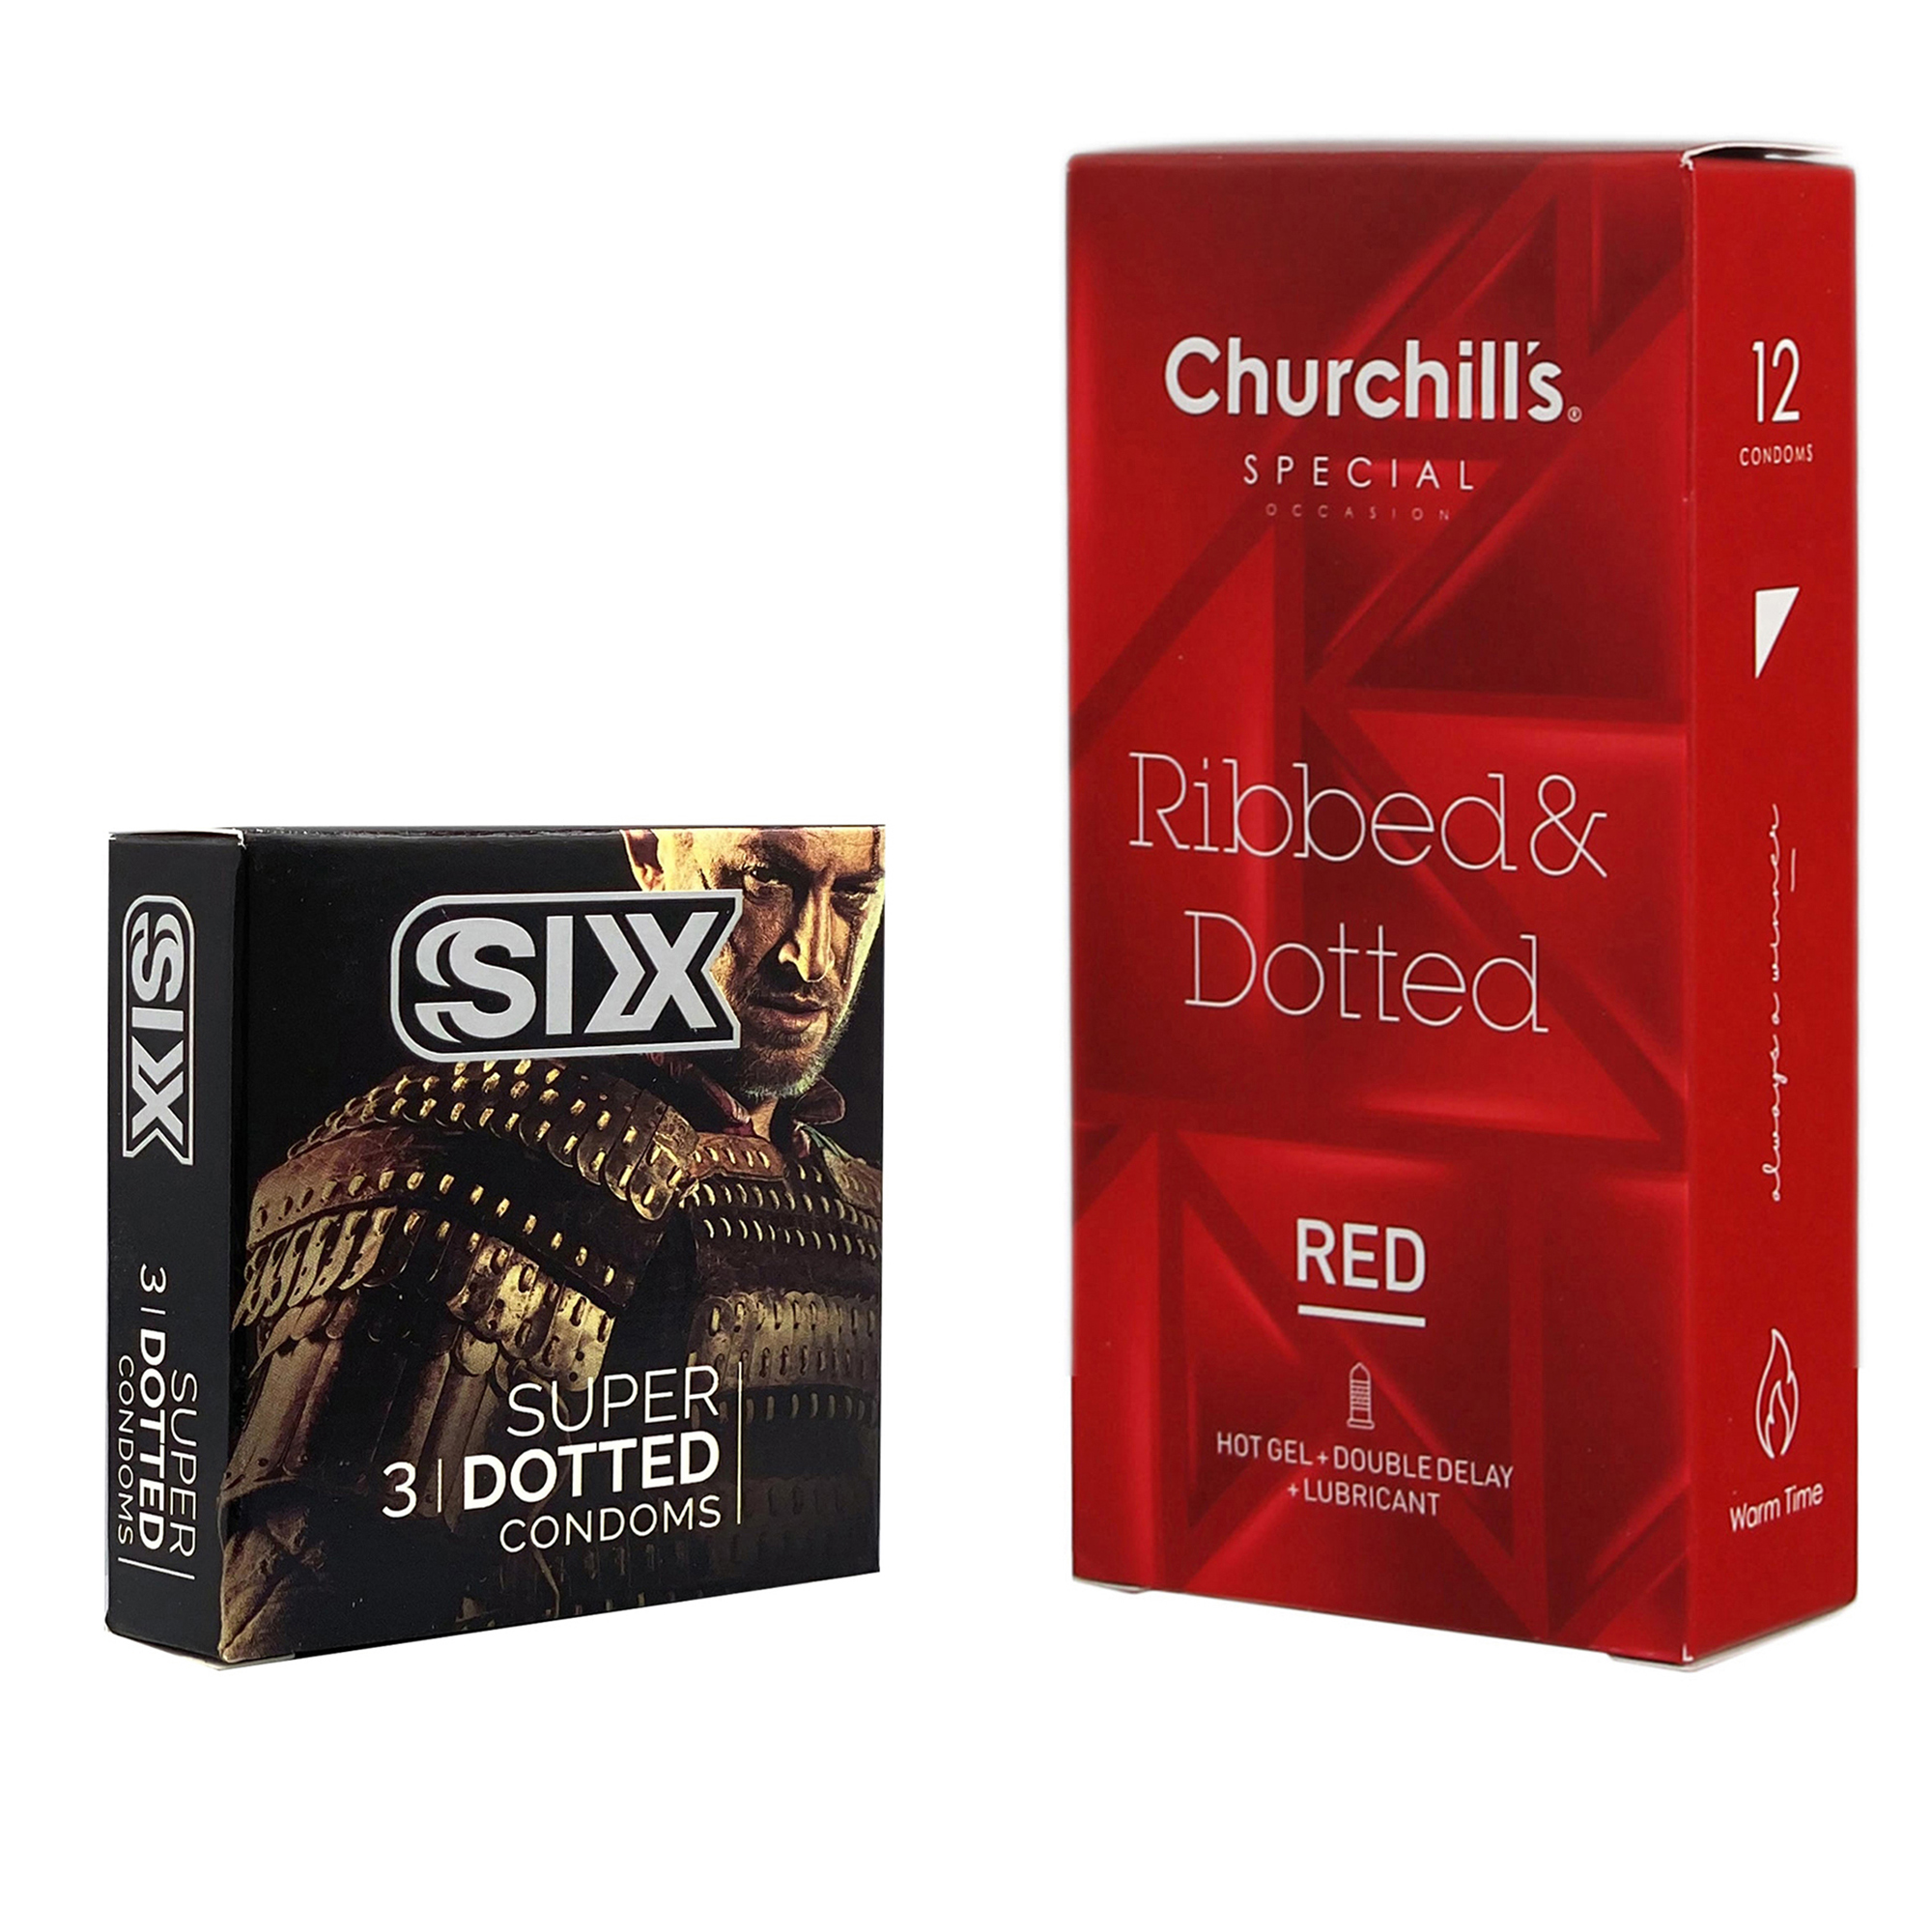 کاندوم چرچیلز مدل Ribbed & Dotted Red بسته 12 عددی به همراه کاندوم سیکس مدل خاردار بسته 3 عددی 